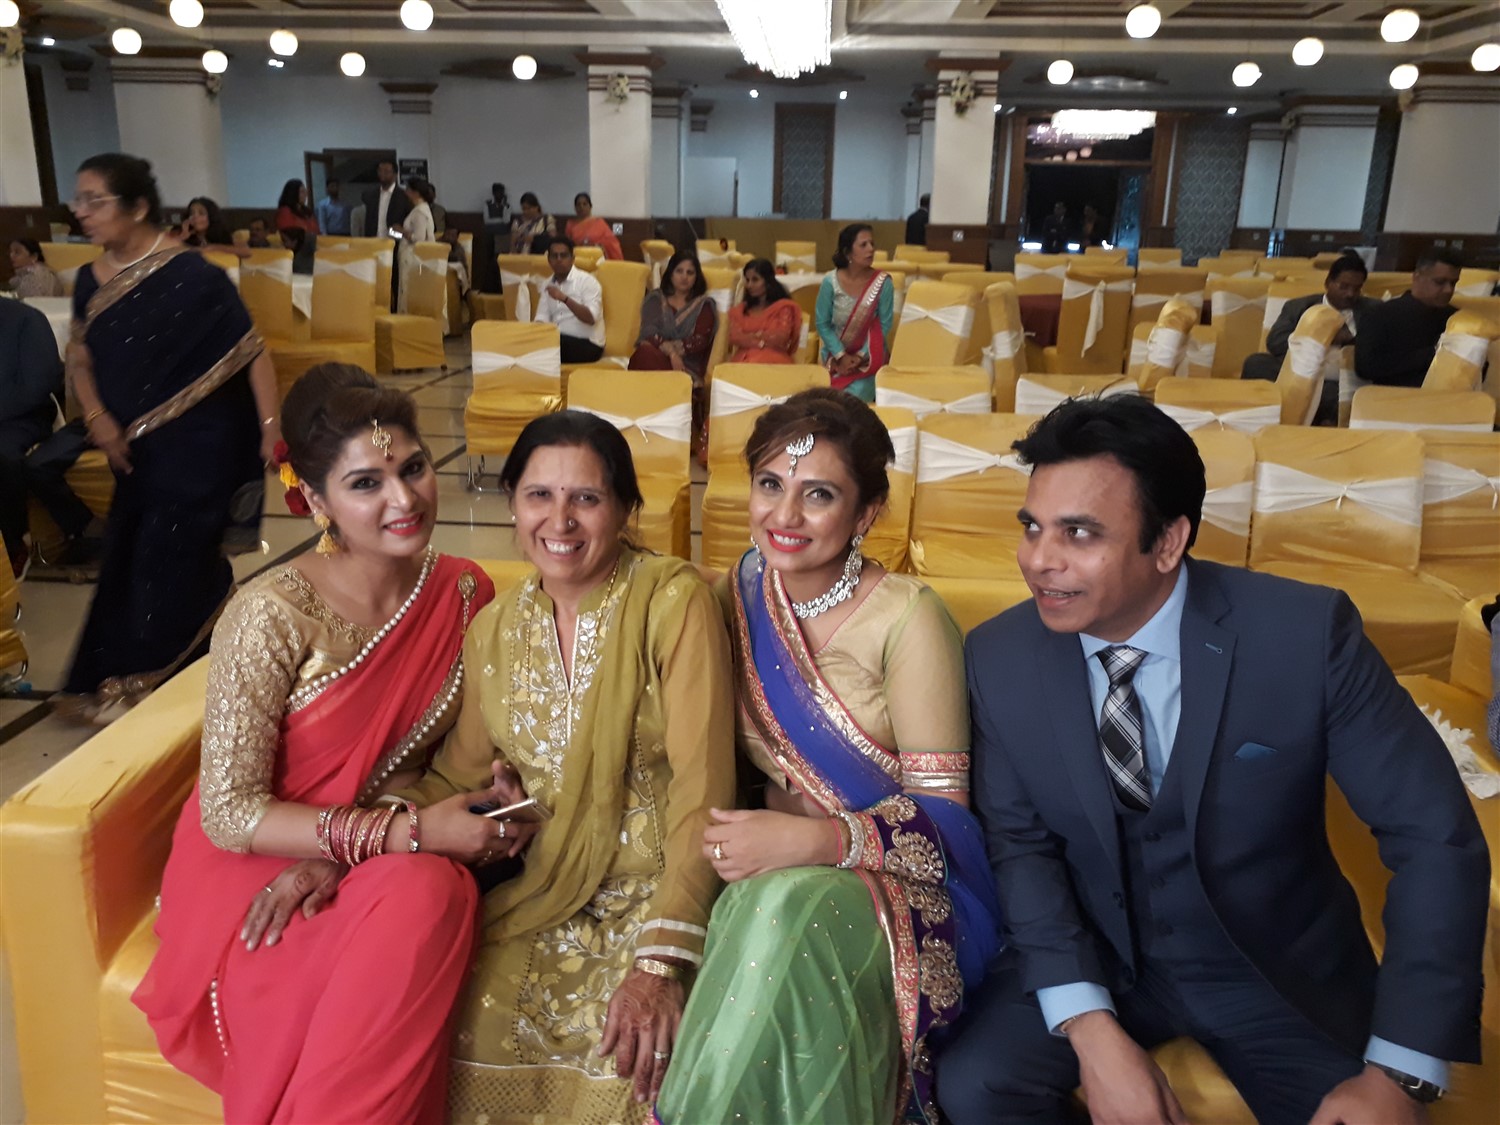 Attended Sister Wedding in Dehradun : India (Nov'17) 13